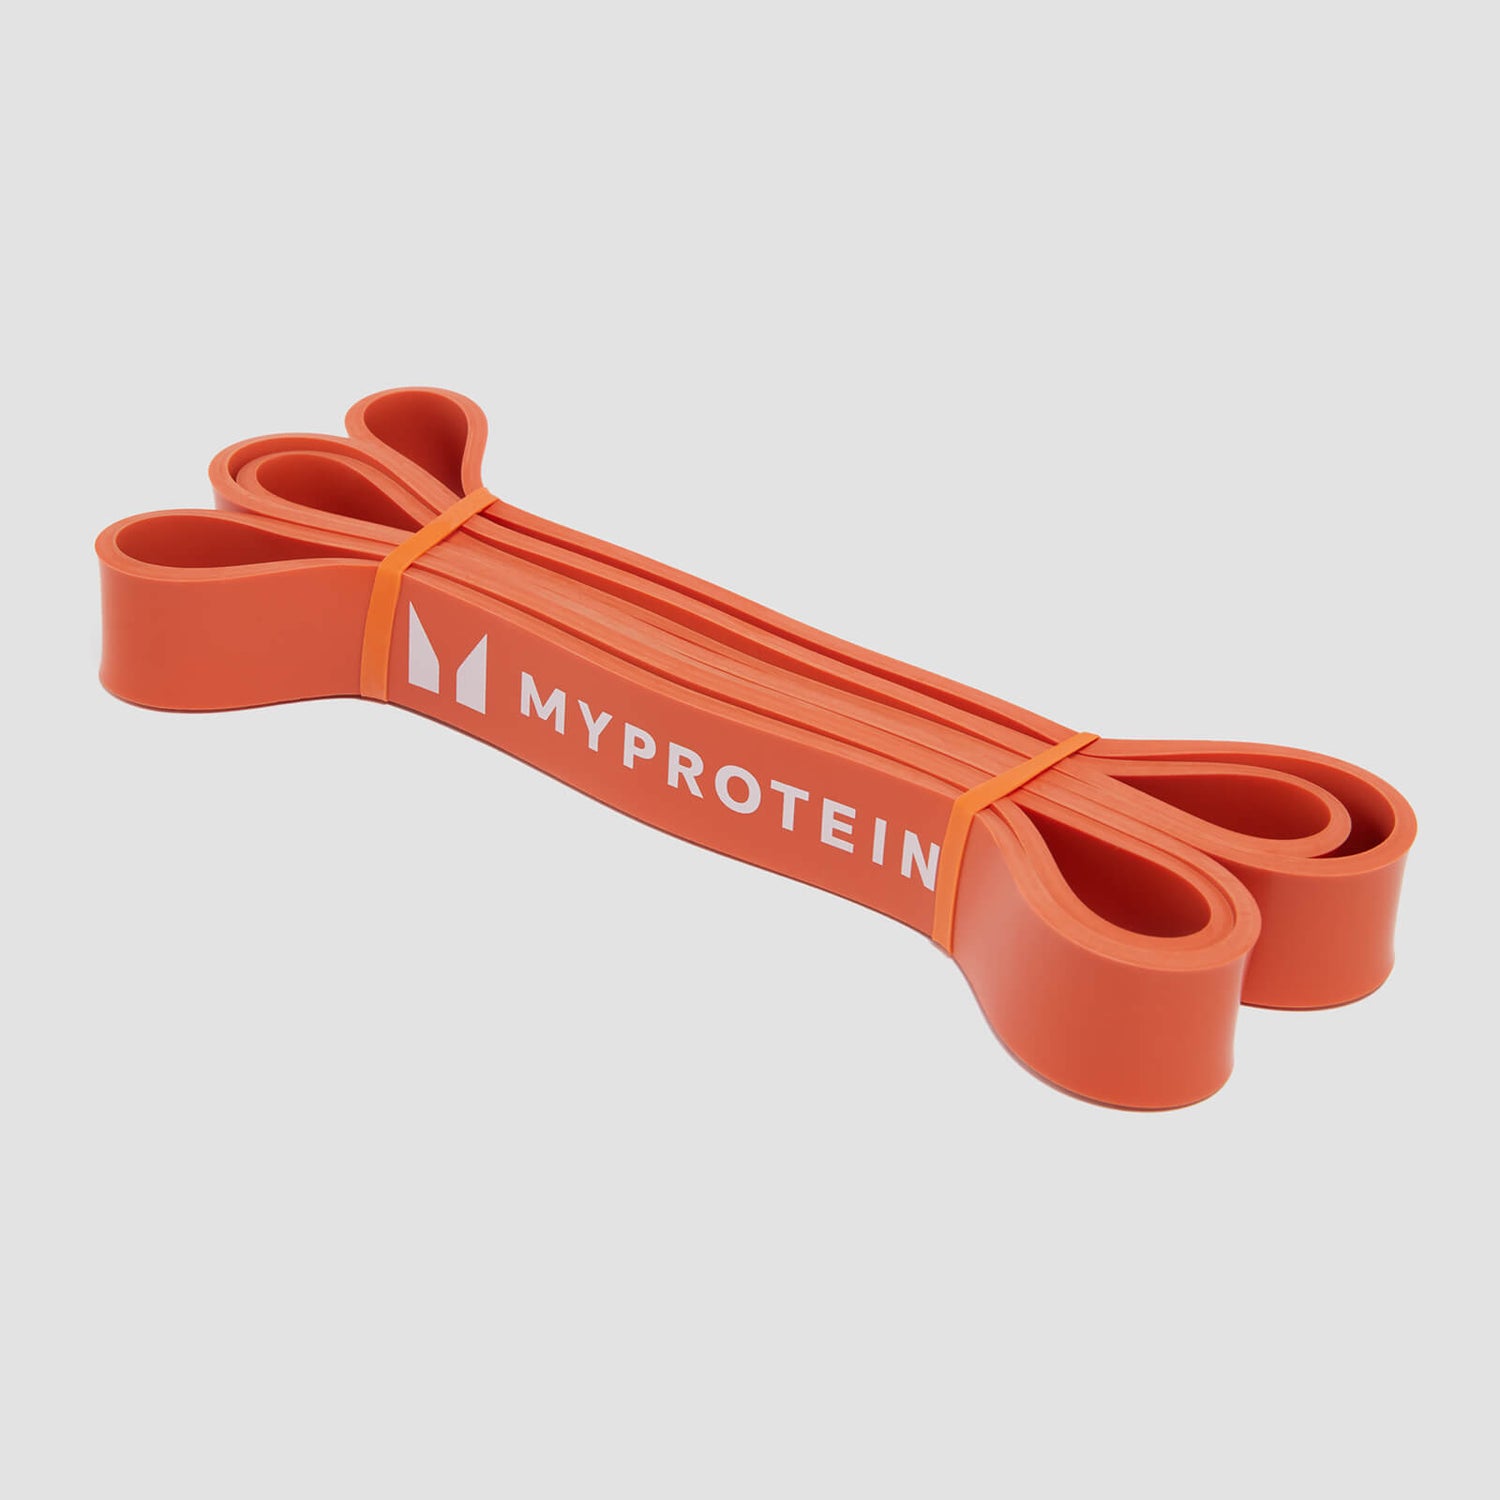 Cinta de resistencia de Myprotein, una unidad (11-36 kg) - Naranja quemado